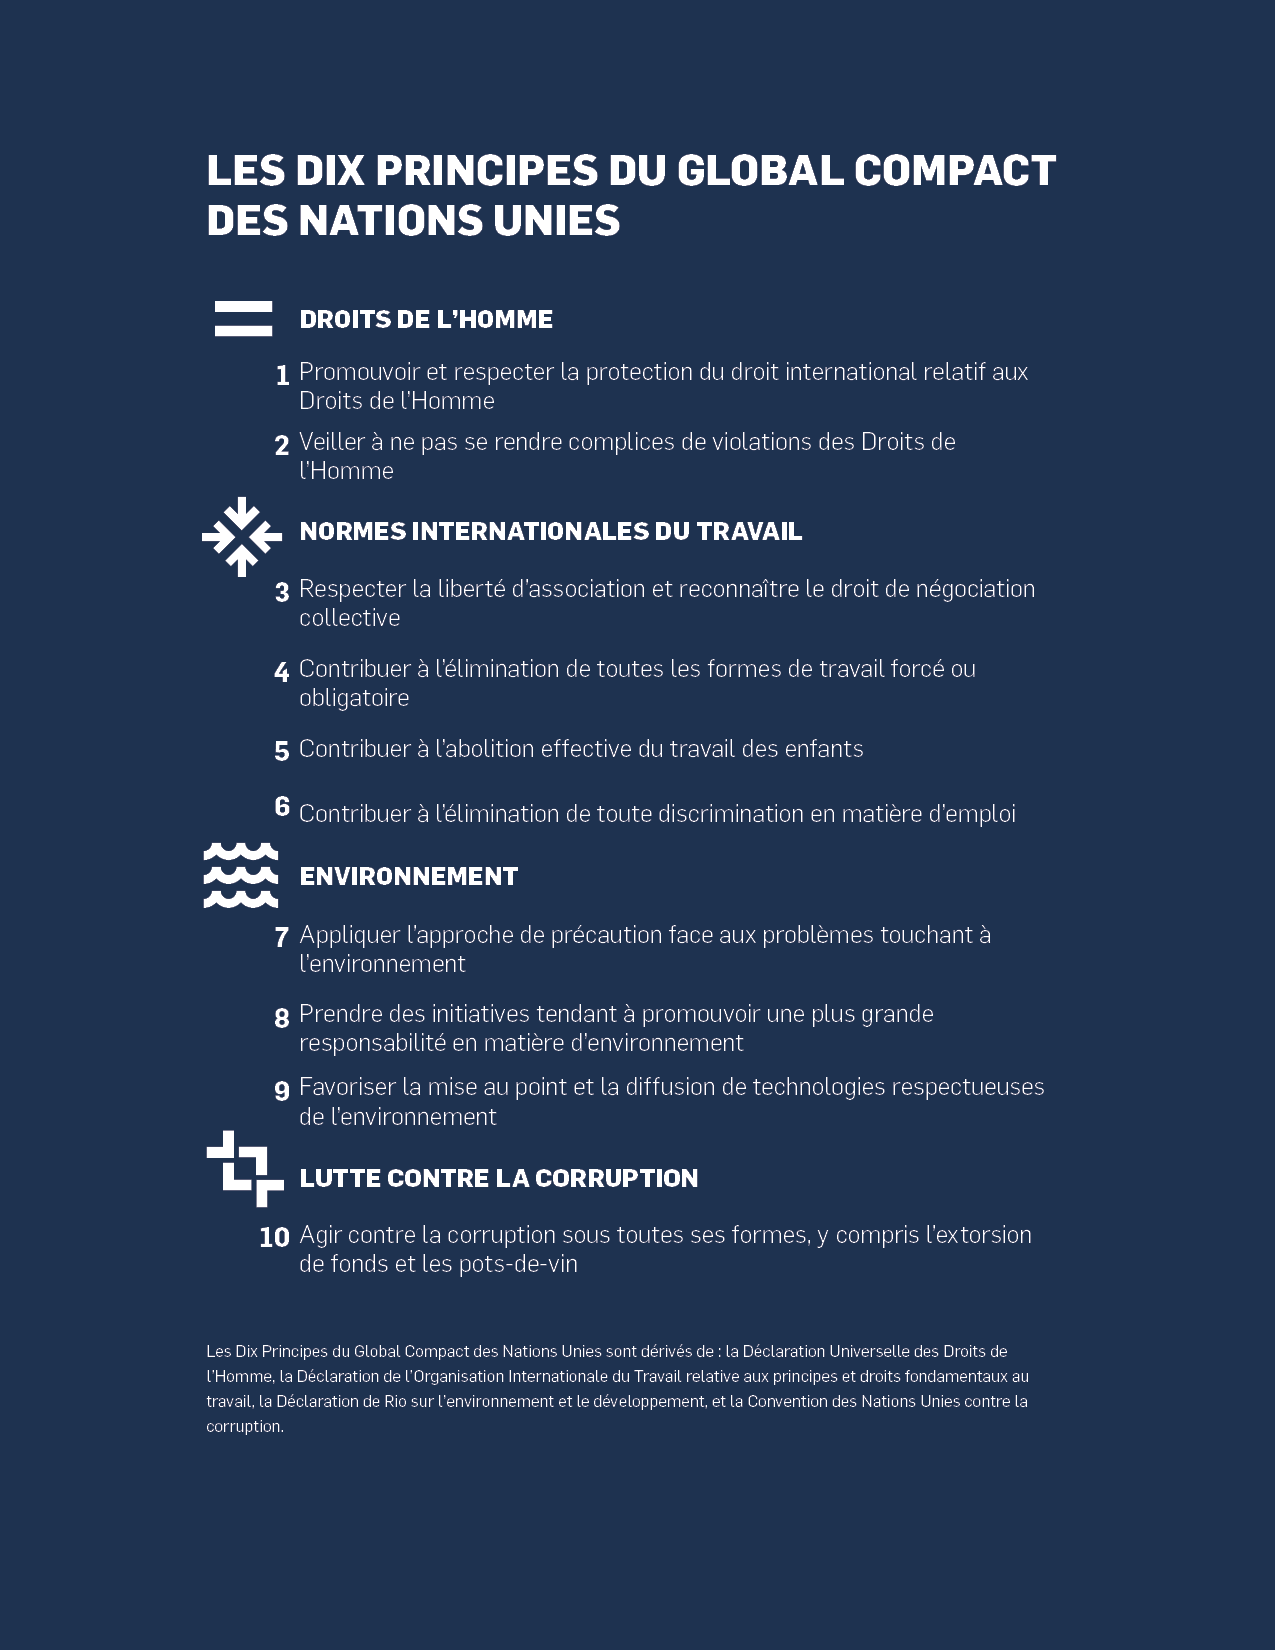 Les dix principes du global compact des nations unis illustré en français